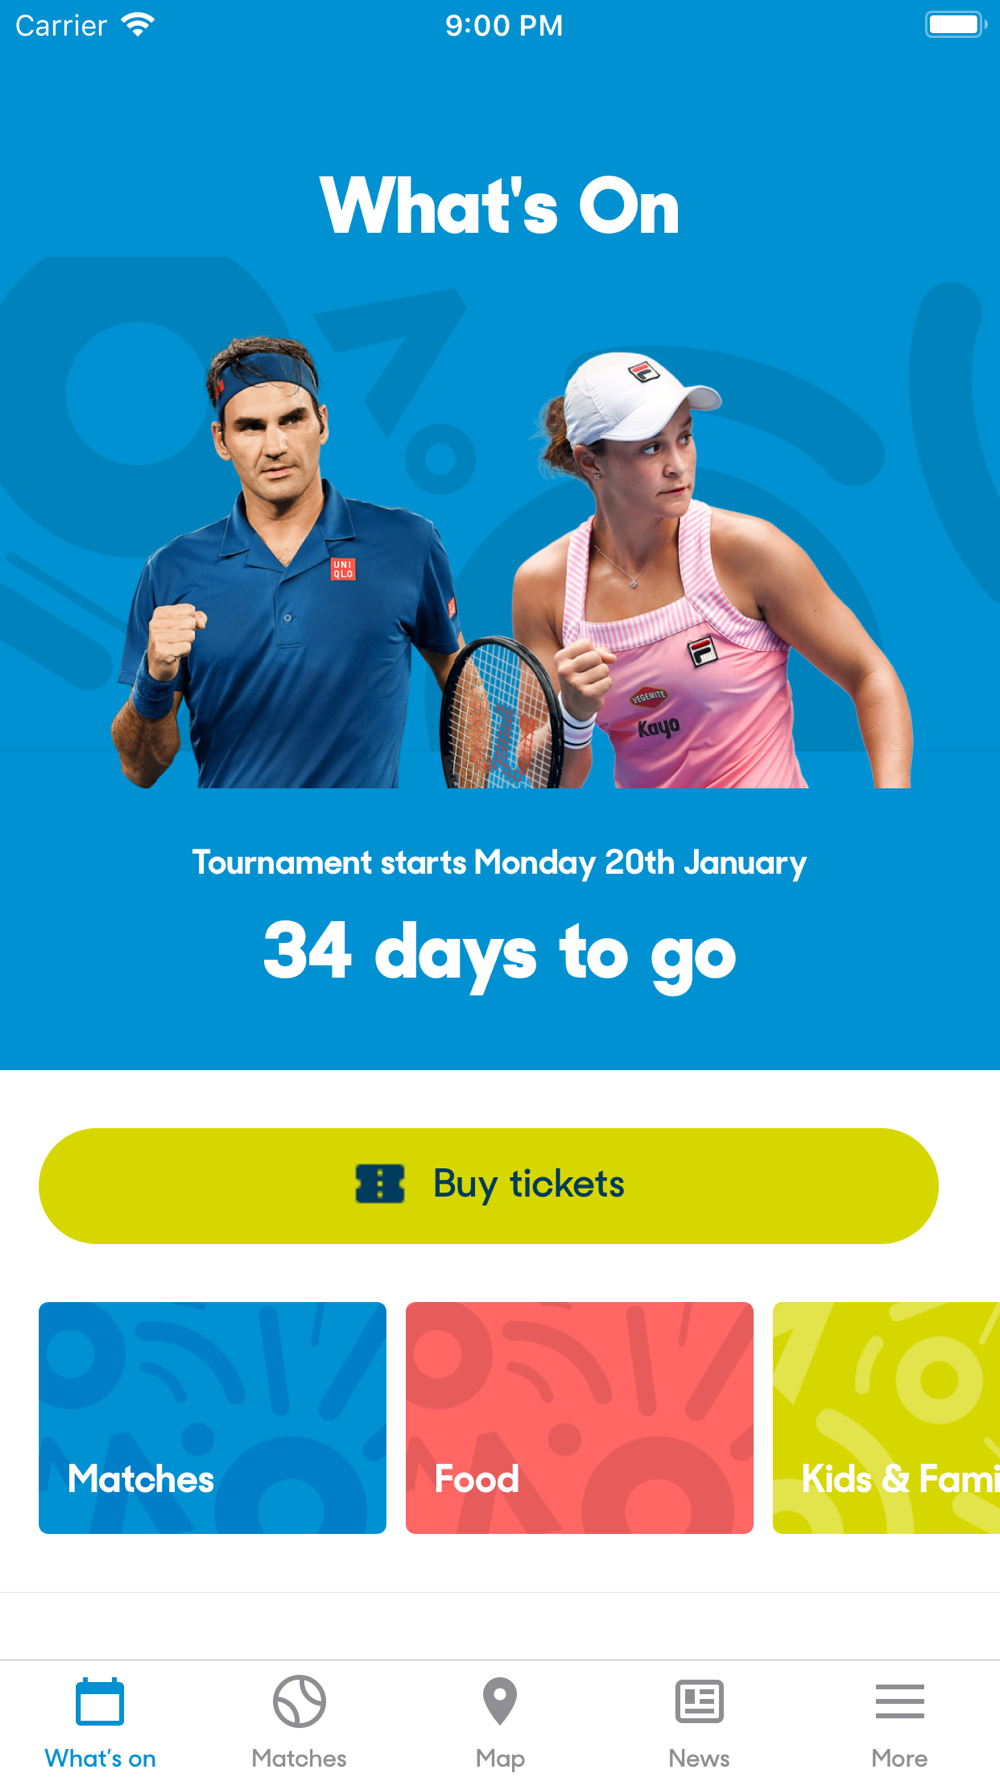 forsætlig plantageejer Stole på Australian Open Tennis 2020 Free Download App for iPhone - STEPrimo.com